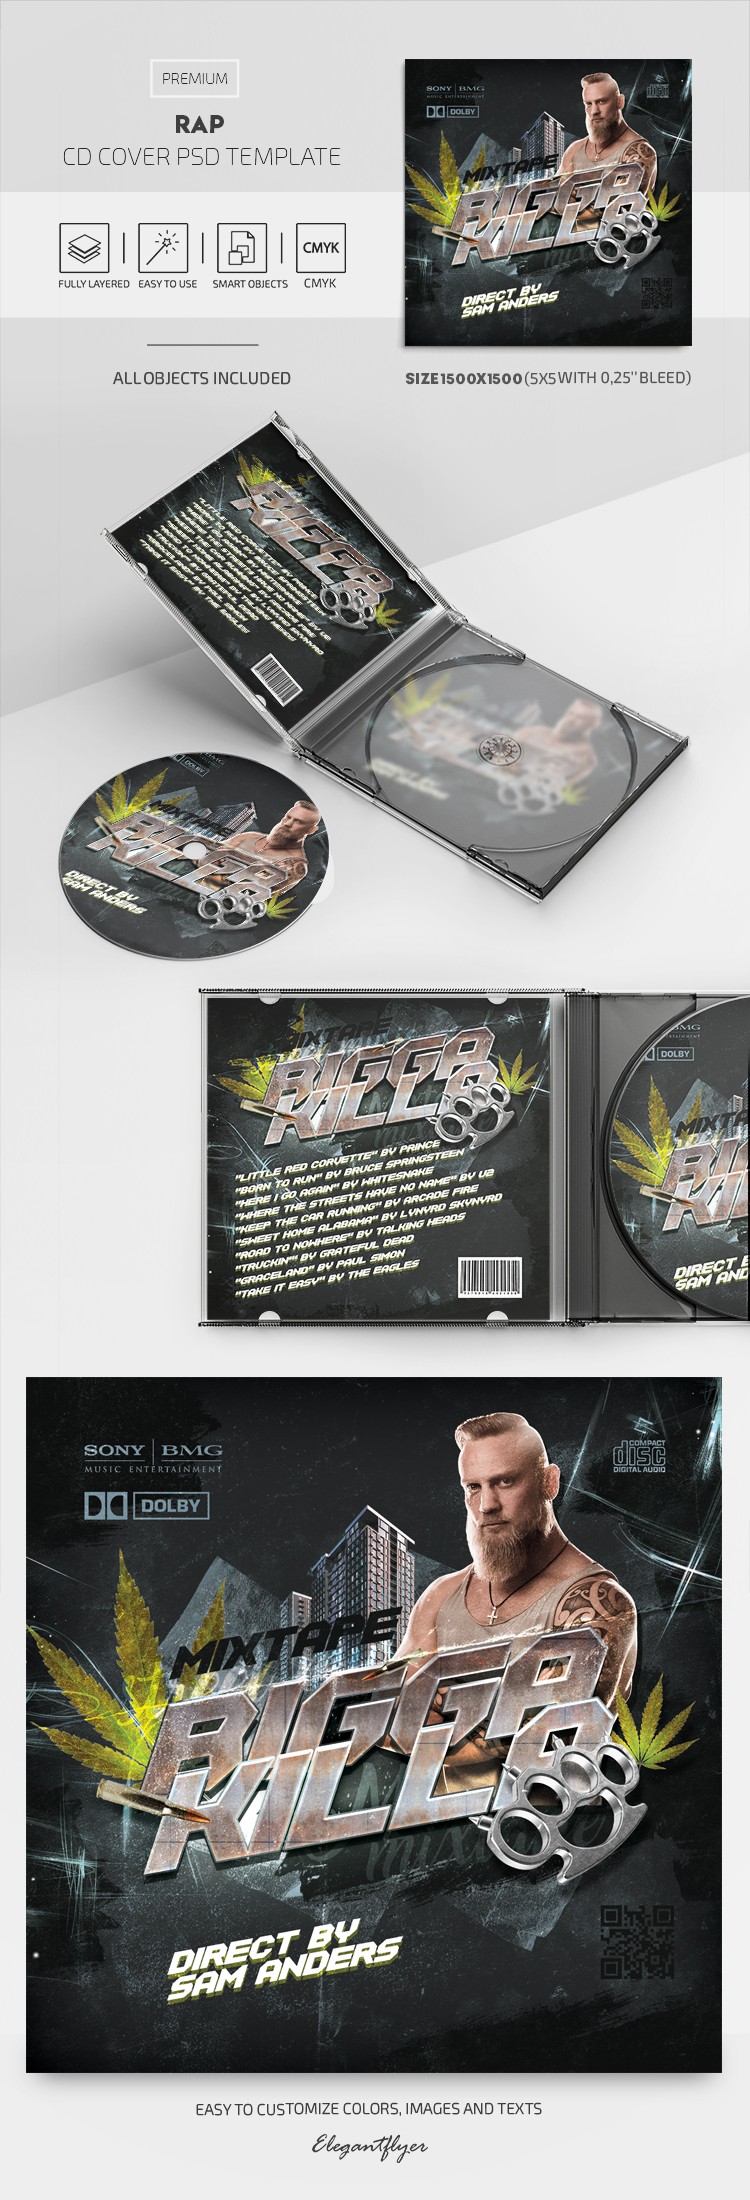 Couverture de CD de rap by ElegantFlyer